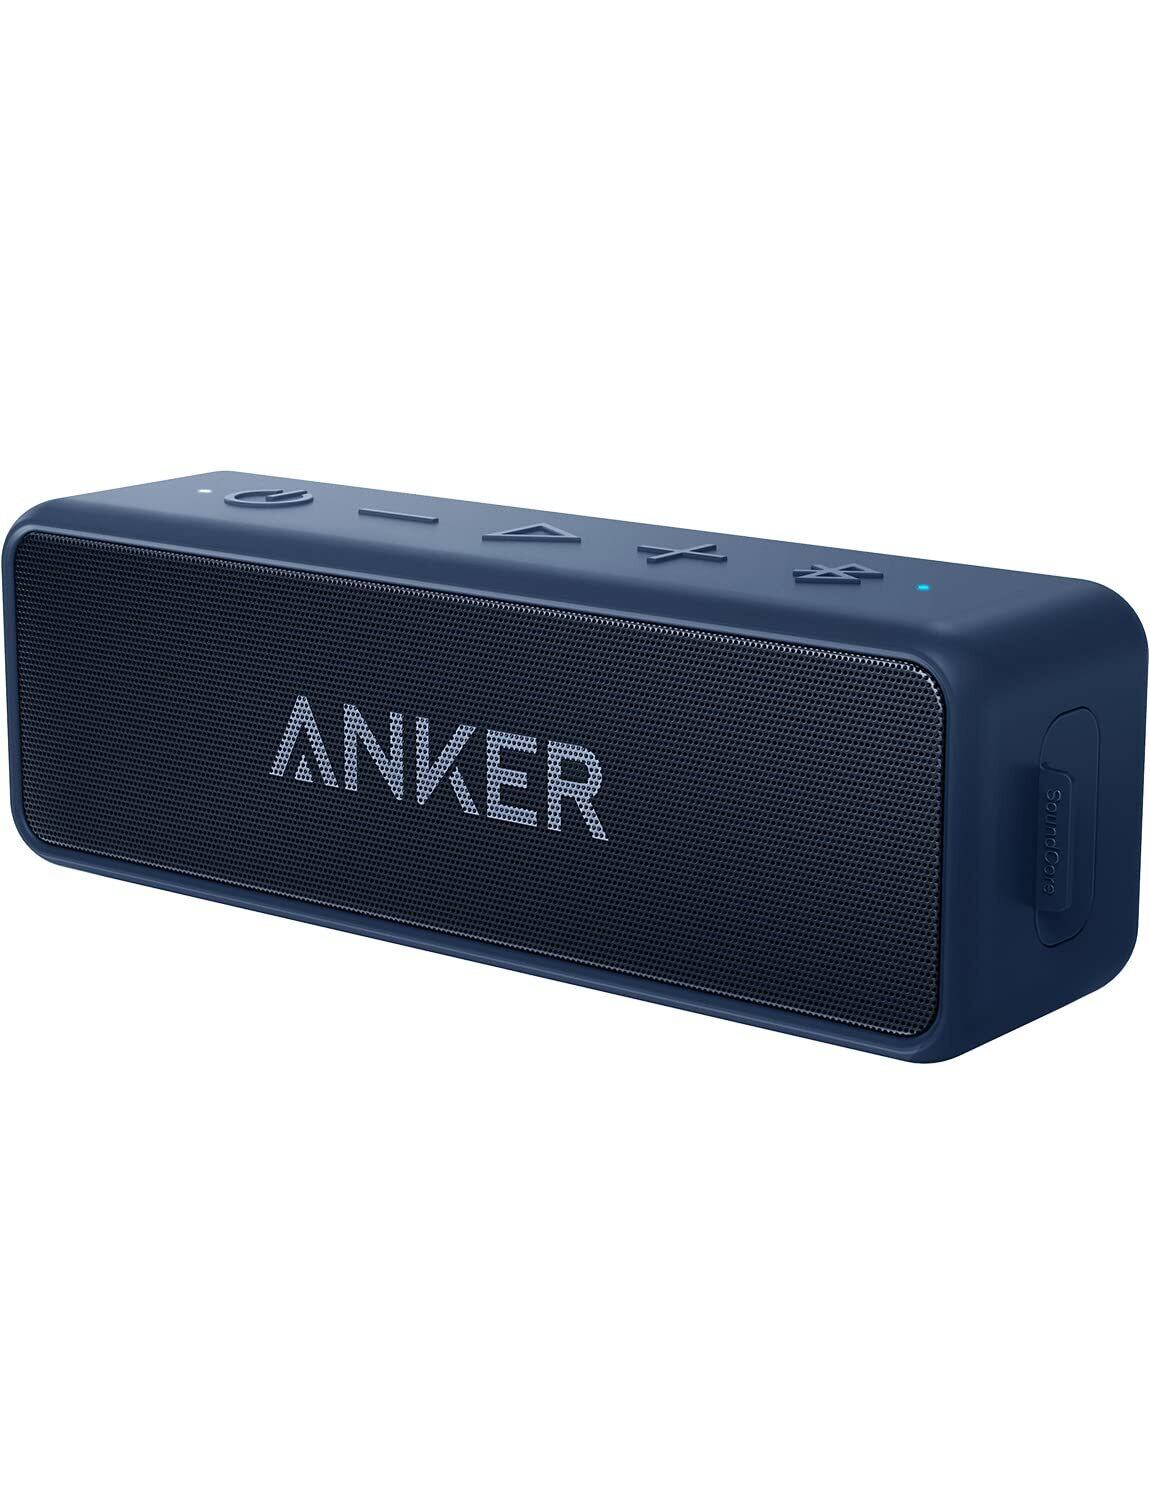 Anker Soundcore 　ブルー青色　Bluetoothスピーカー